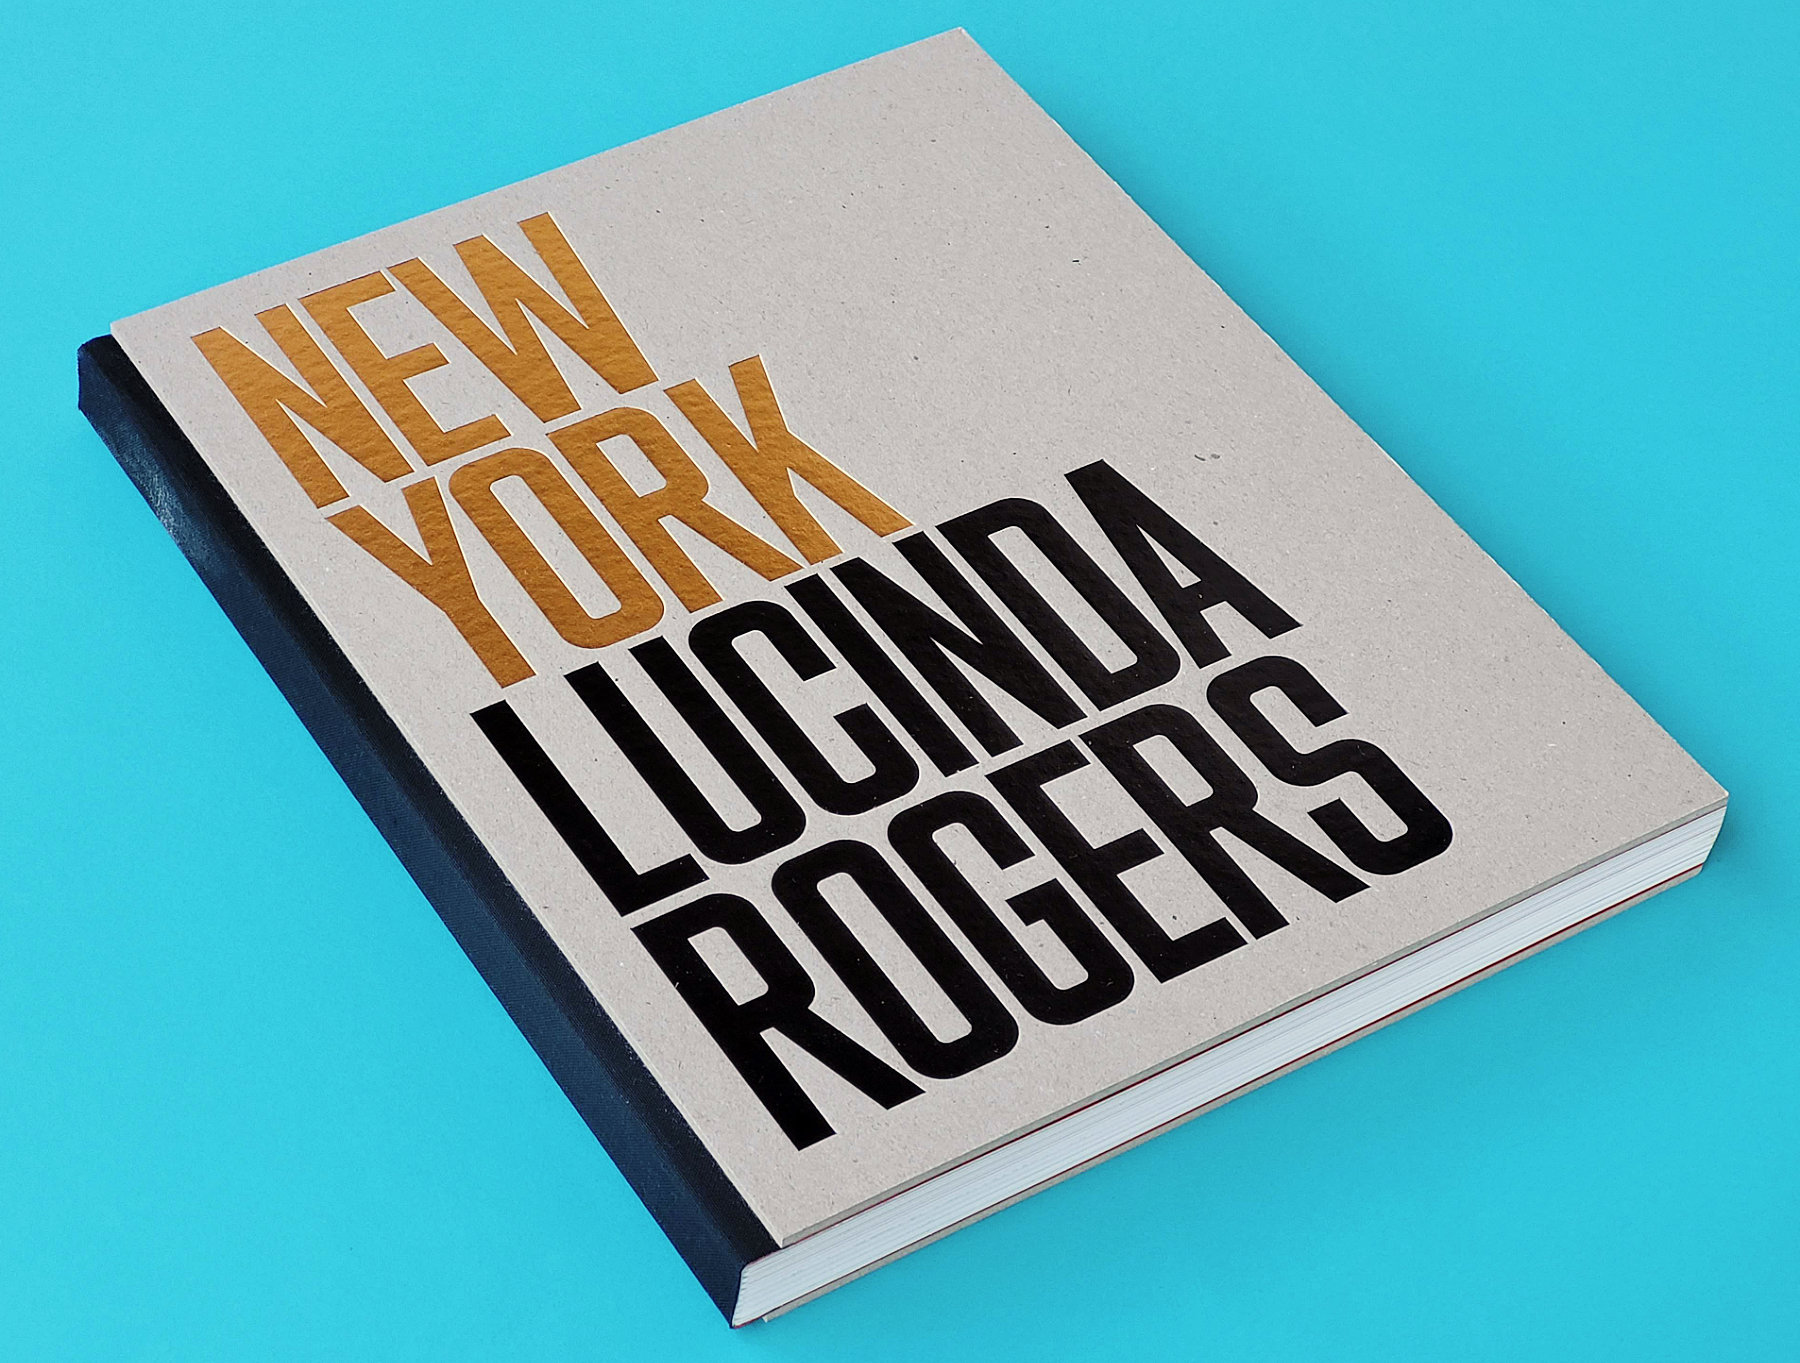 Foto do livro. Na capa, em papel cinza cru, se lê “New York” (em dourado) e “Lucinda Rogers” (em preto)